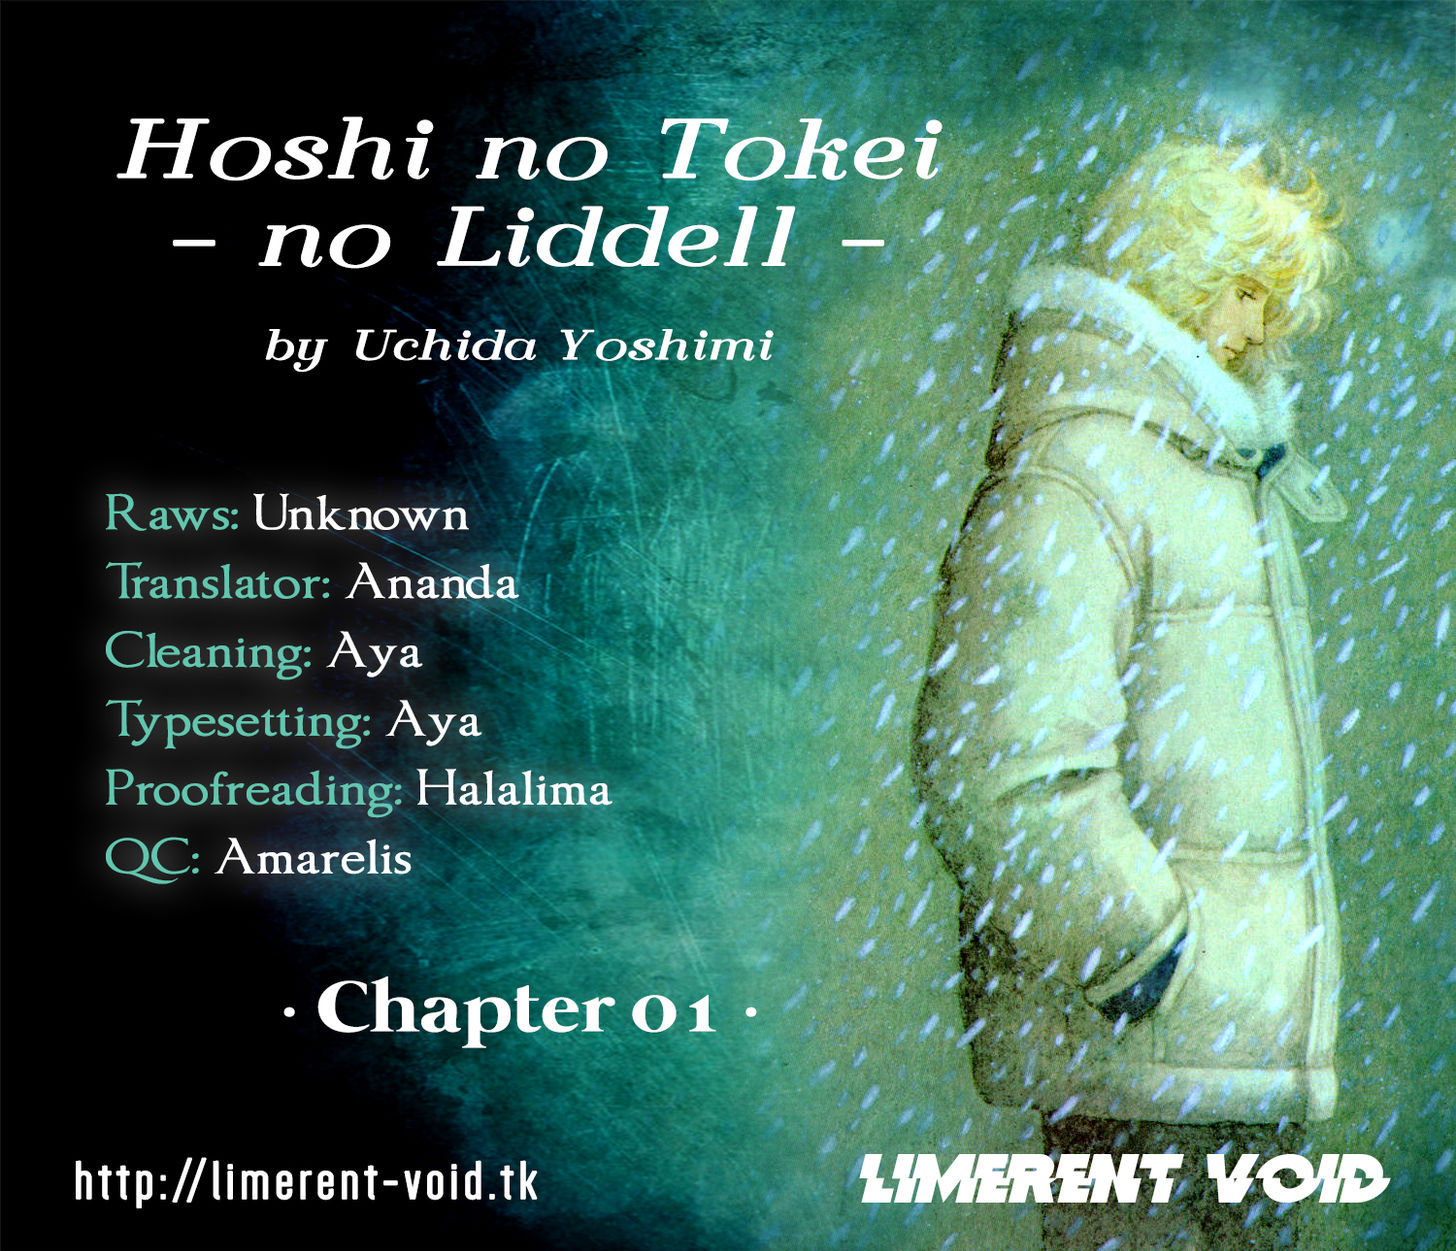 Hoshi no Tokei no Liddell 1